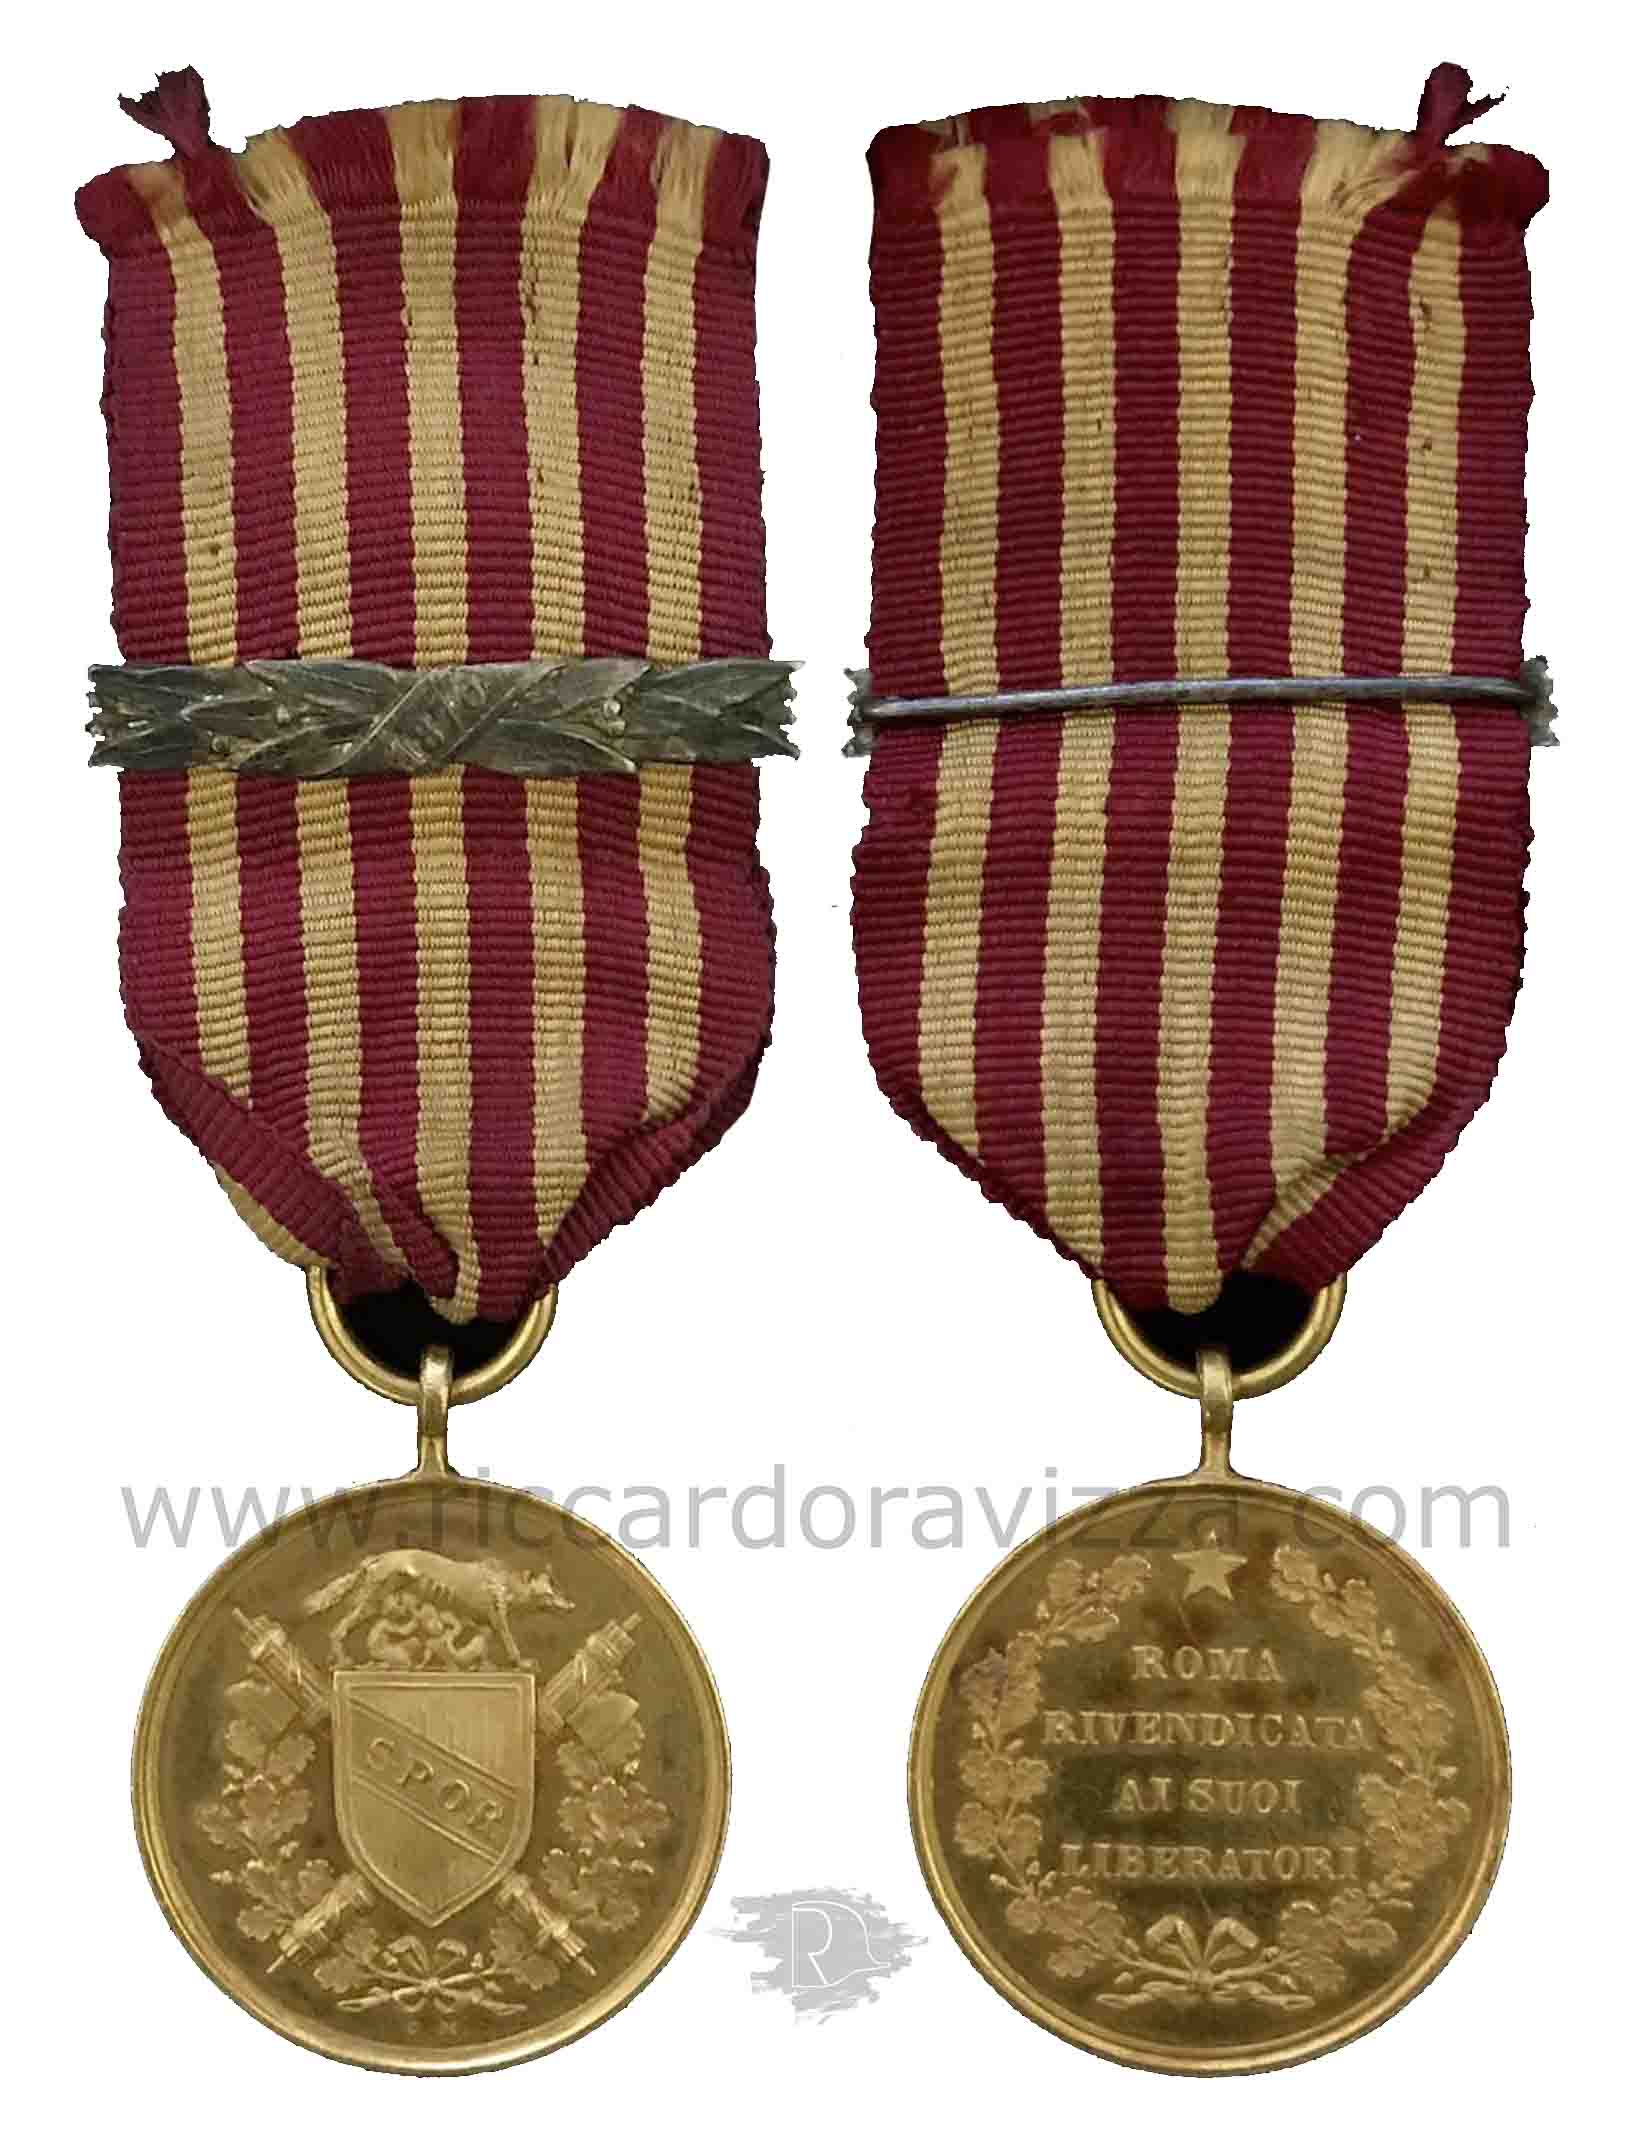 Medaglia d'oro ai benemeriti della Liberazione di Roma 1849-1870